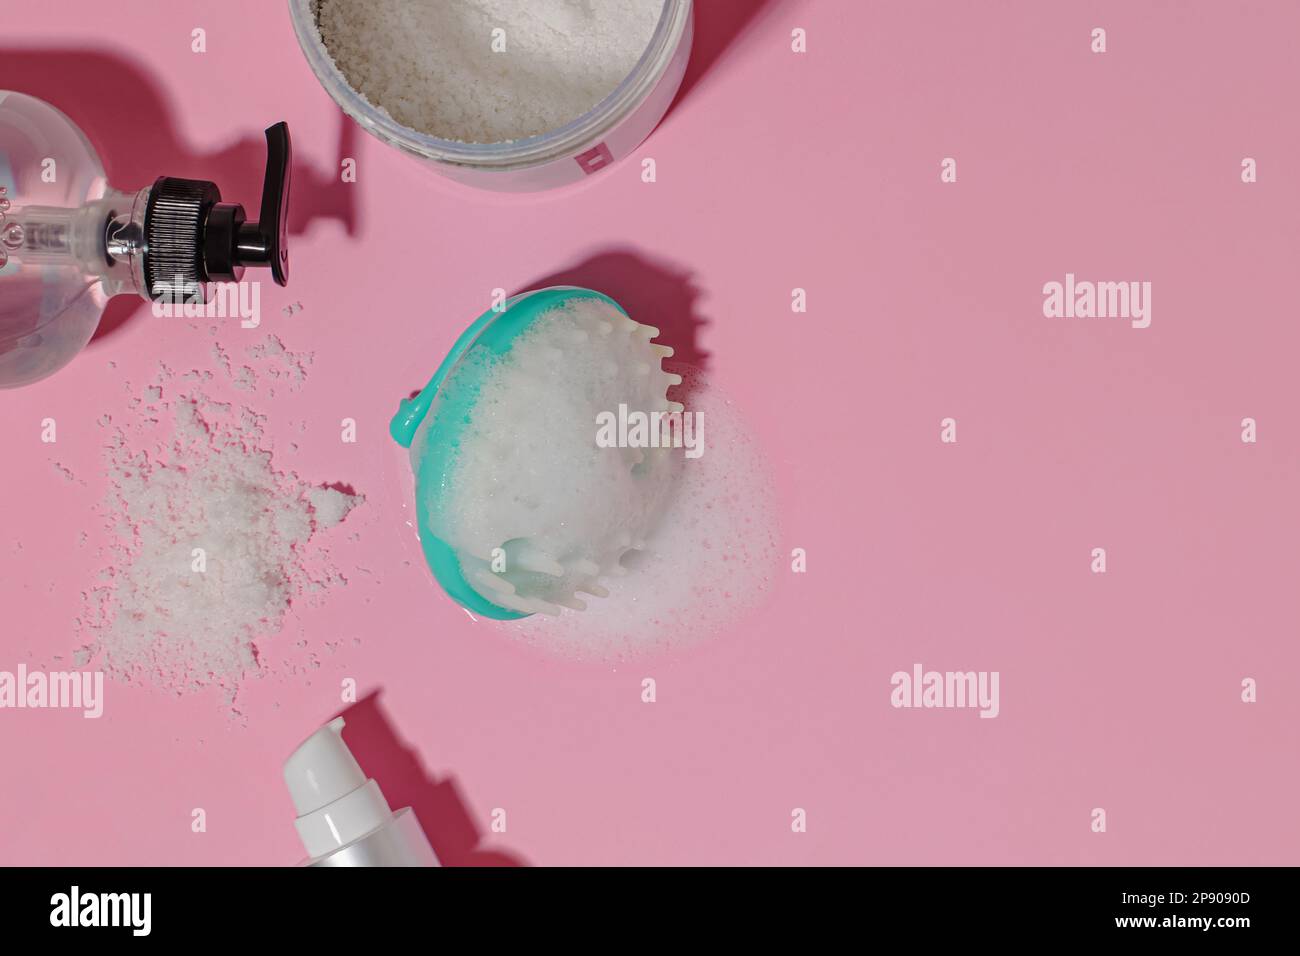 Haarbürste für Kopfhautmassage mit Schaumstoff und Haarreinigungsprodukte auf pinkfarbenem Hintergrund mit rauen Schatten Stockfoto